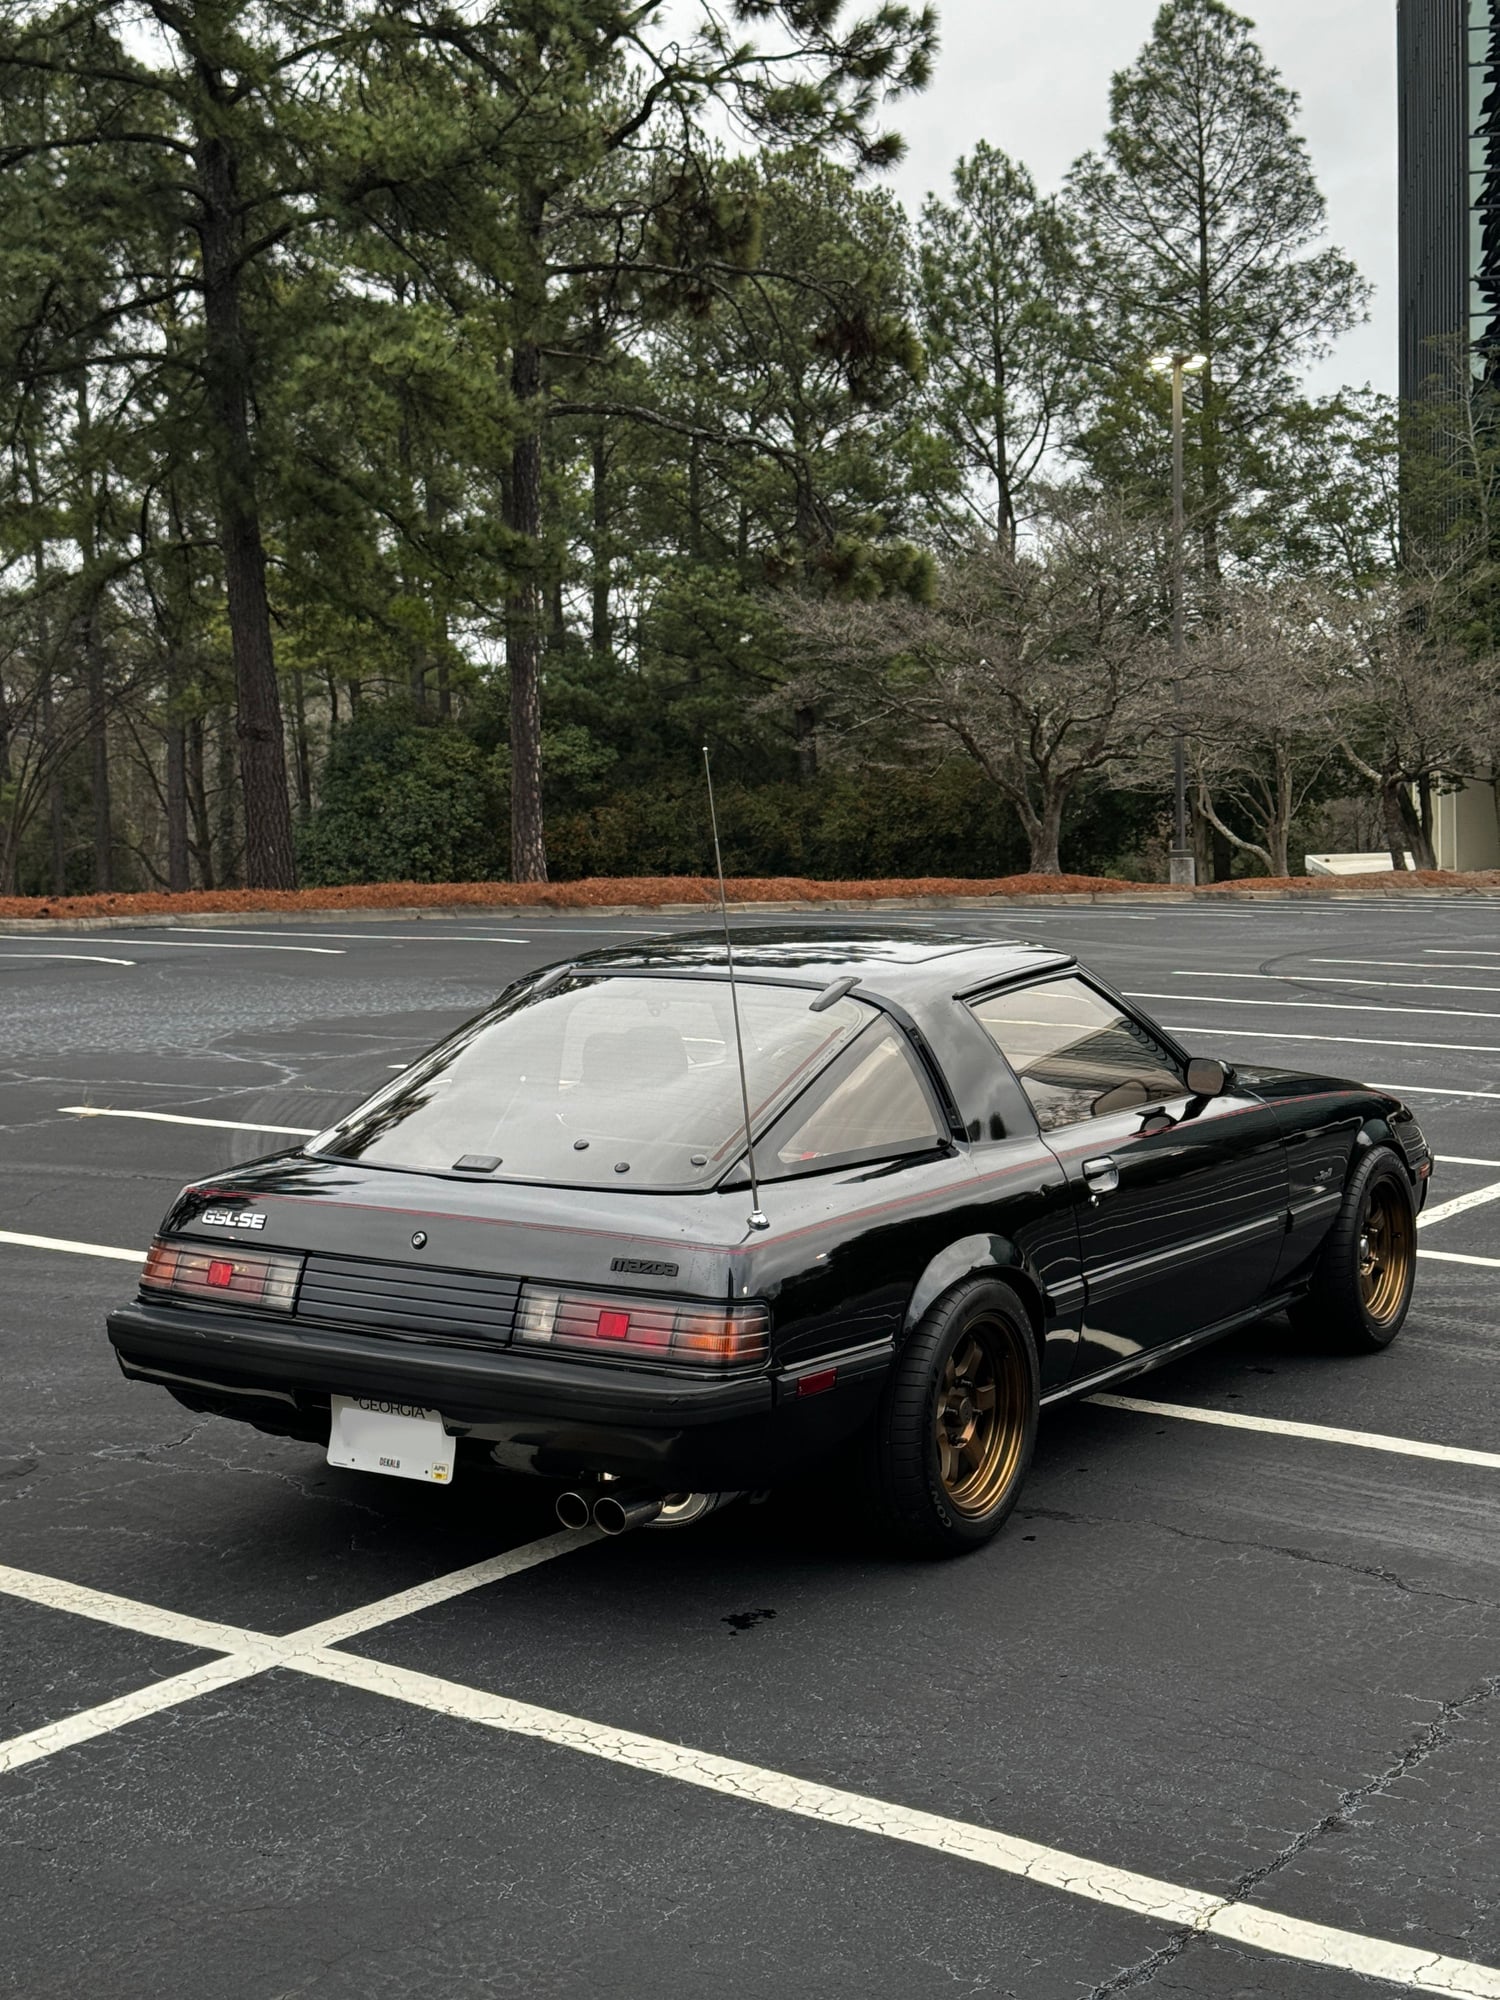 1985 Mazda RX-7 - 1985 Mazda RX-7 GSL-SE - Used - Atlanta, GA 30338, United States